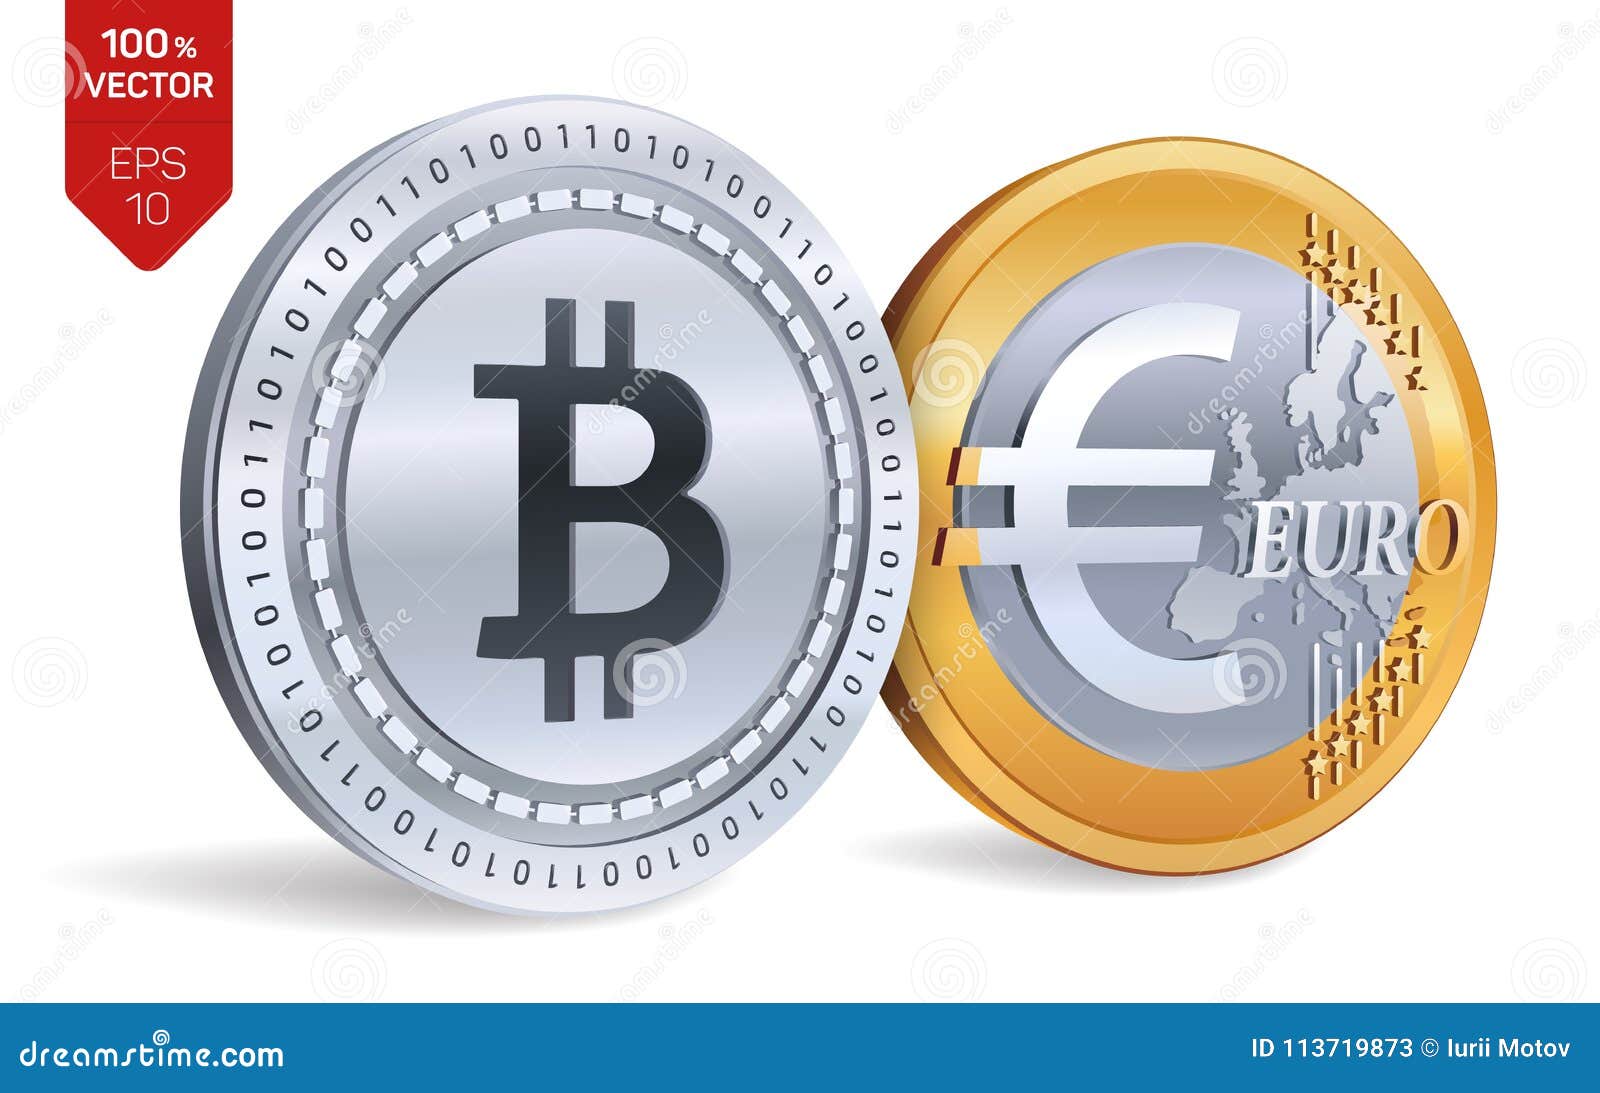 1 euro bitcoin